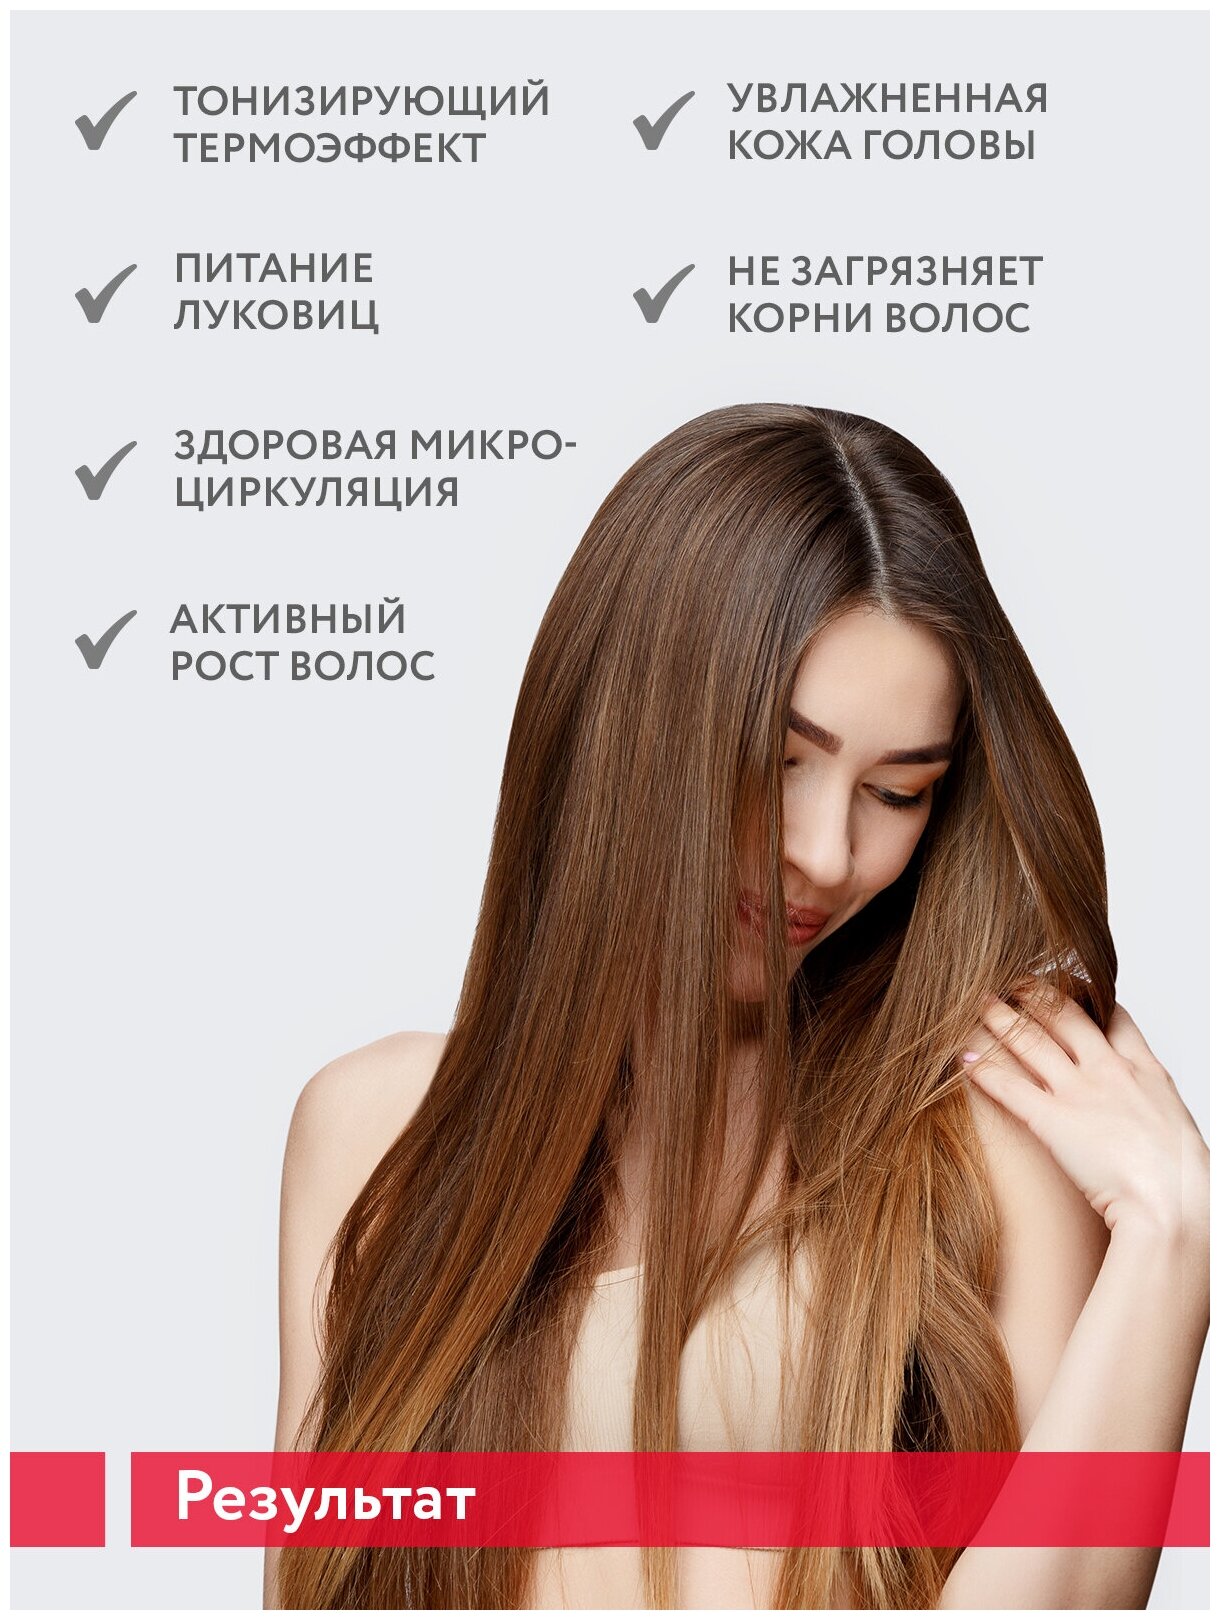 ARAVIA Сыворотка с термоэффектом для стимуляции роста волос Thermal Energy Serum, 150 мл